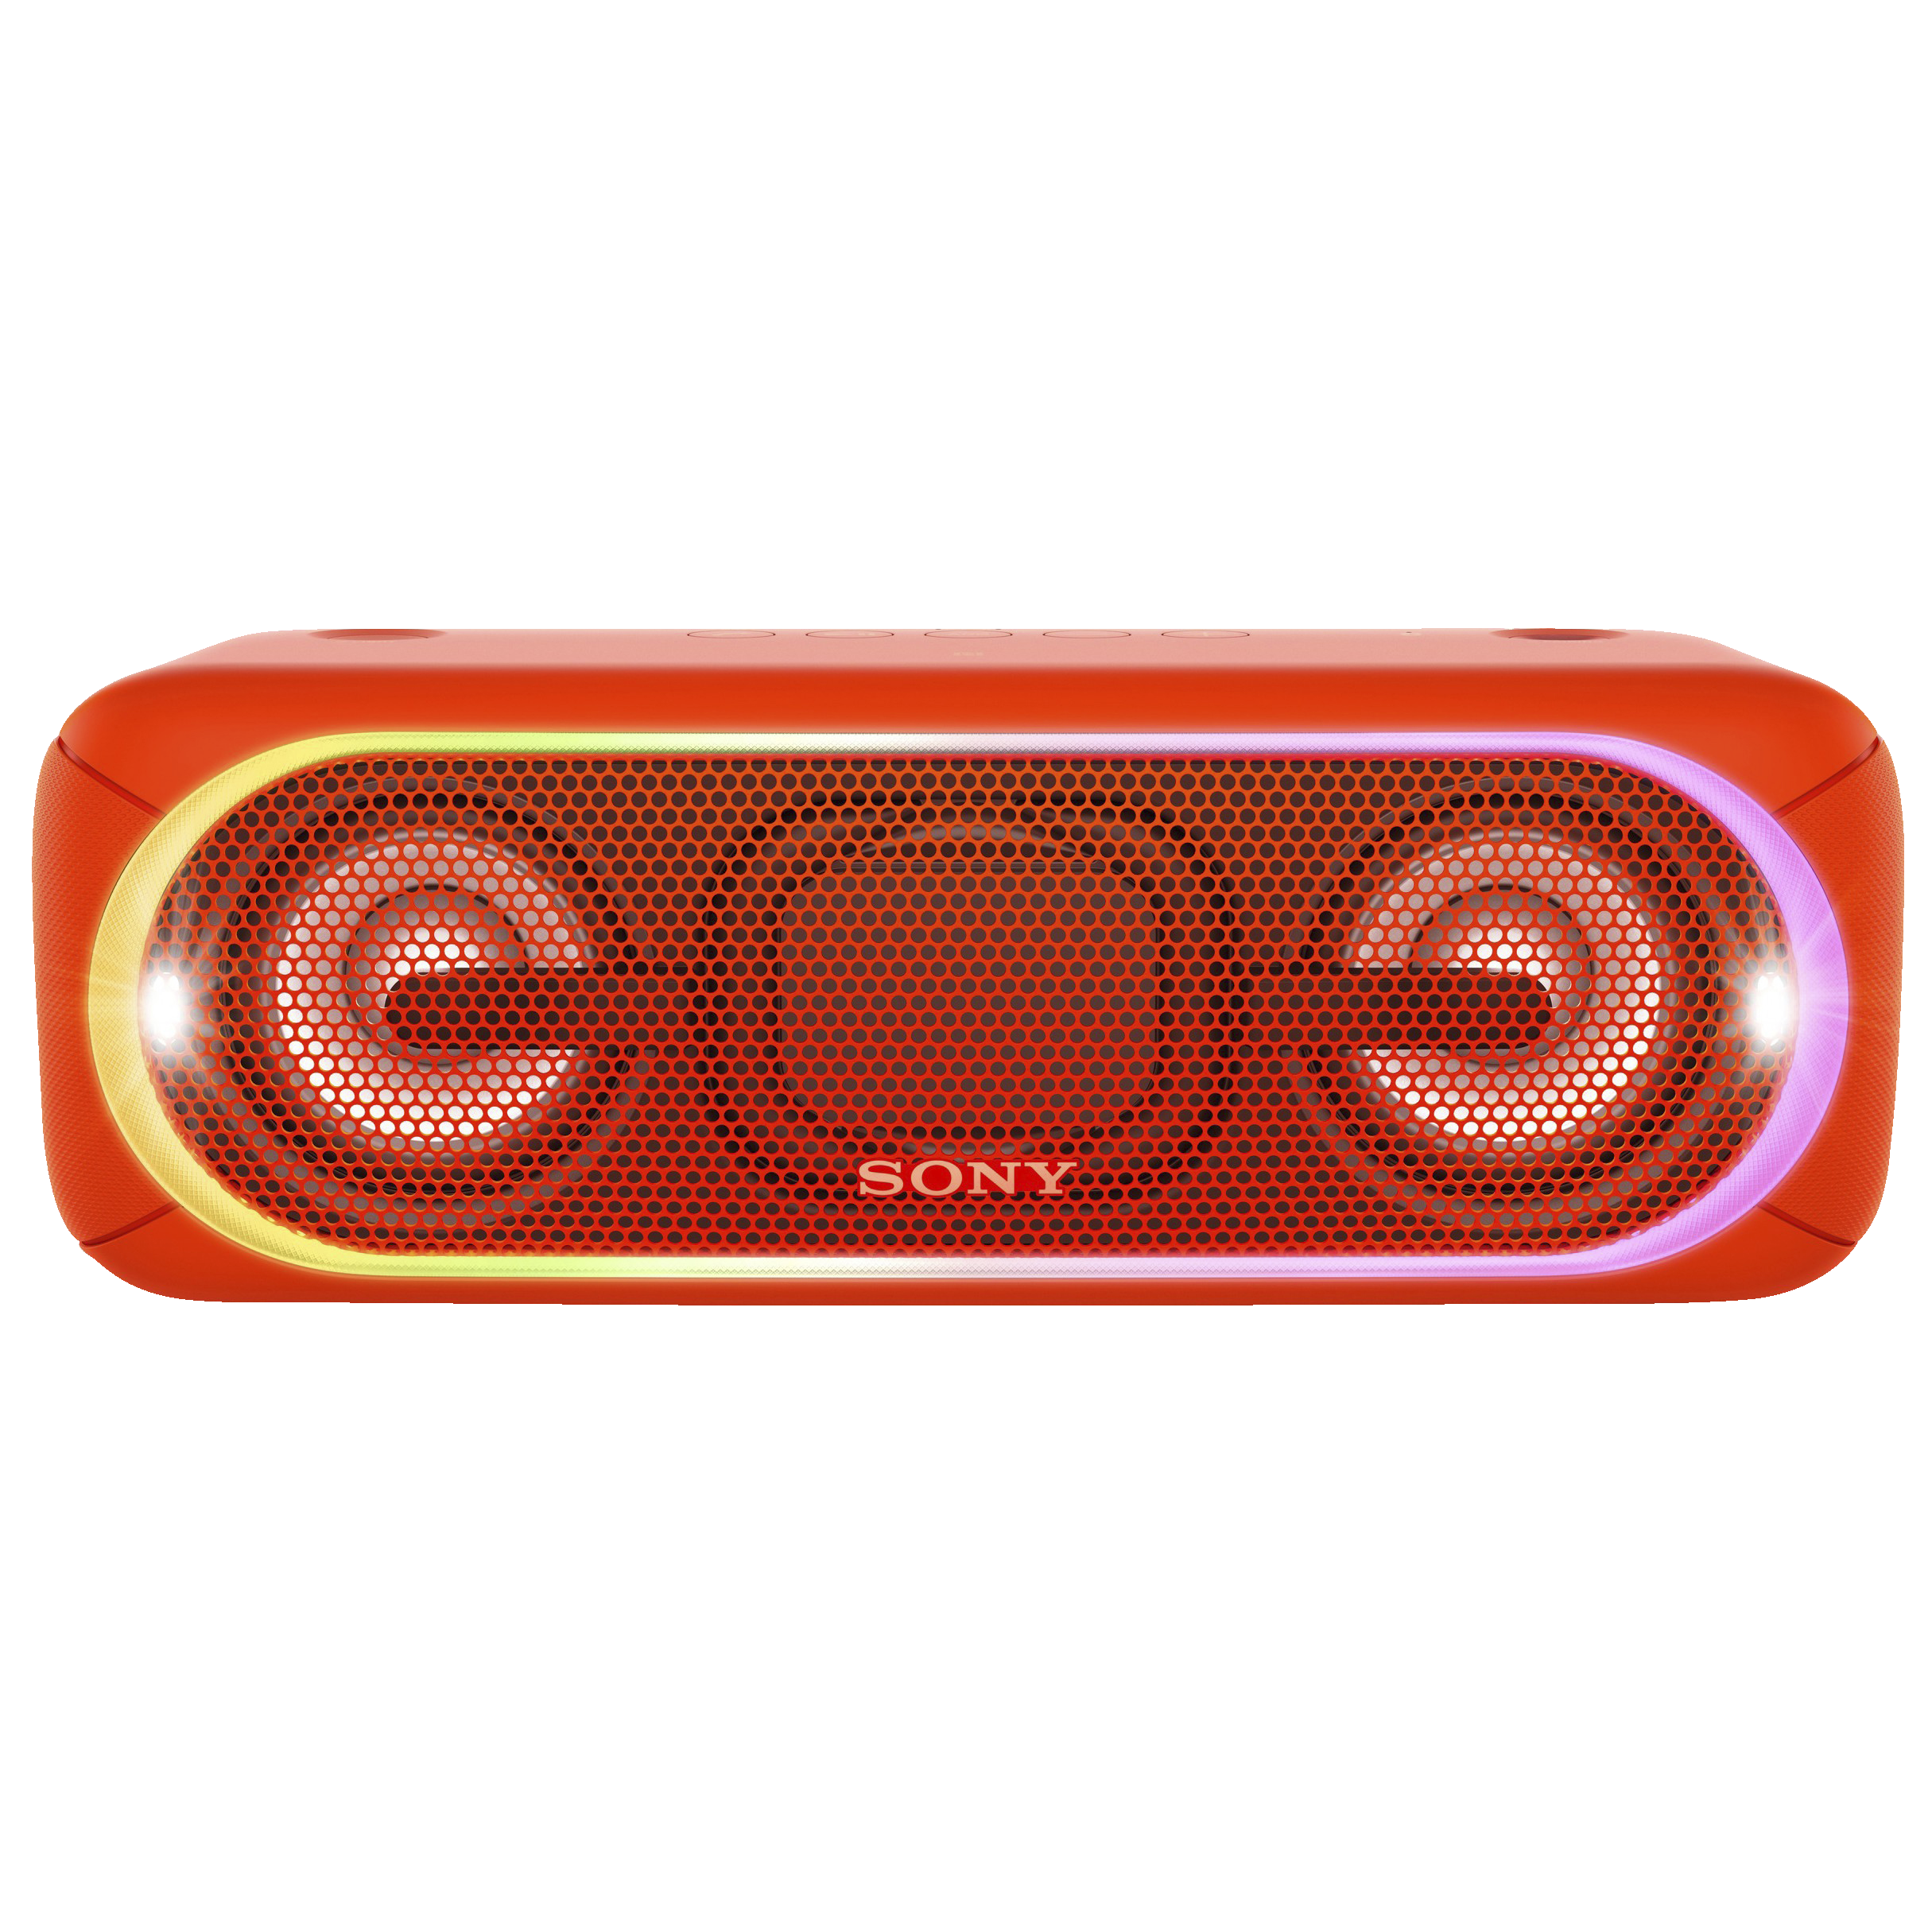 Sony XB40 bærbar høyttaler SRS-XB40 (rød) - Høyttalere - Elkjøp